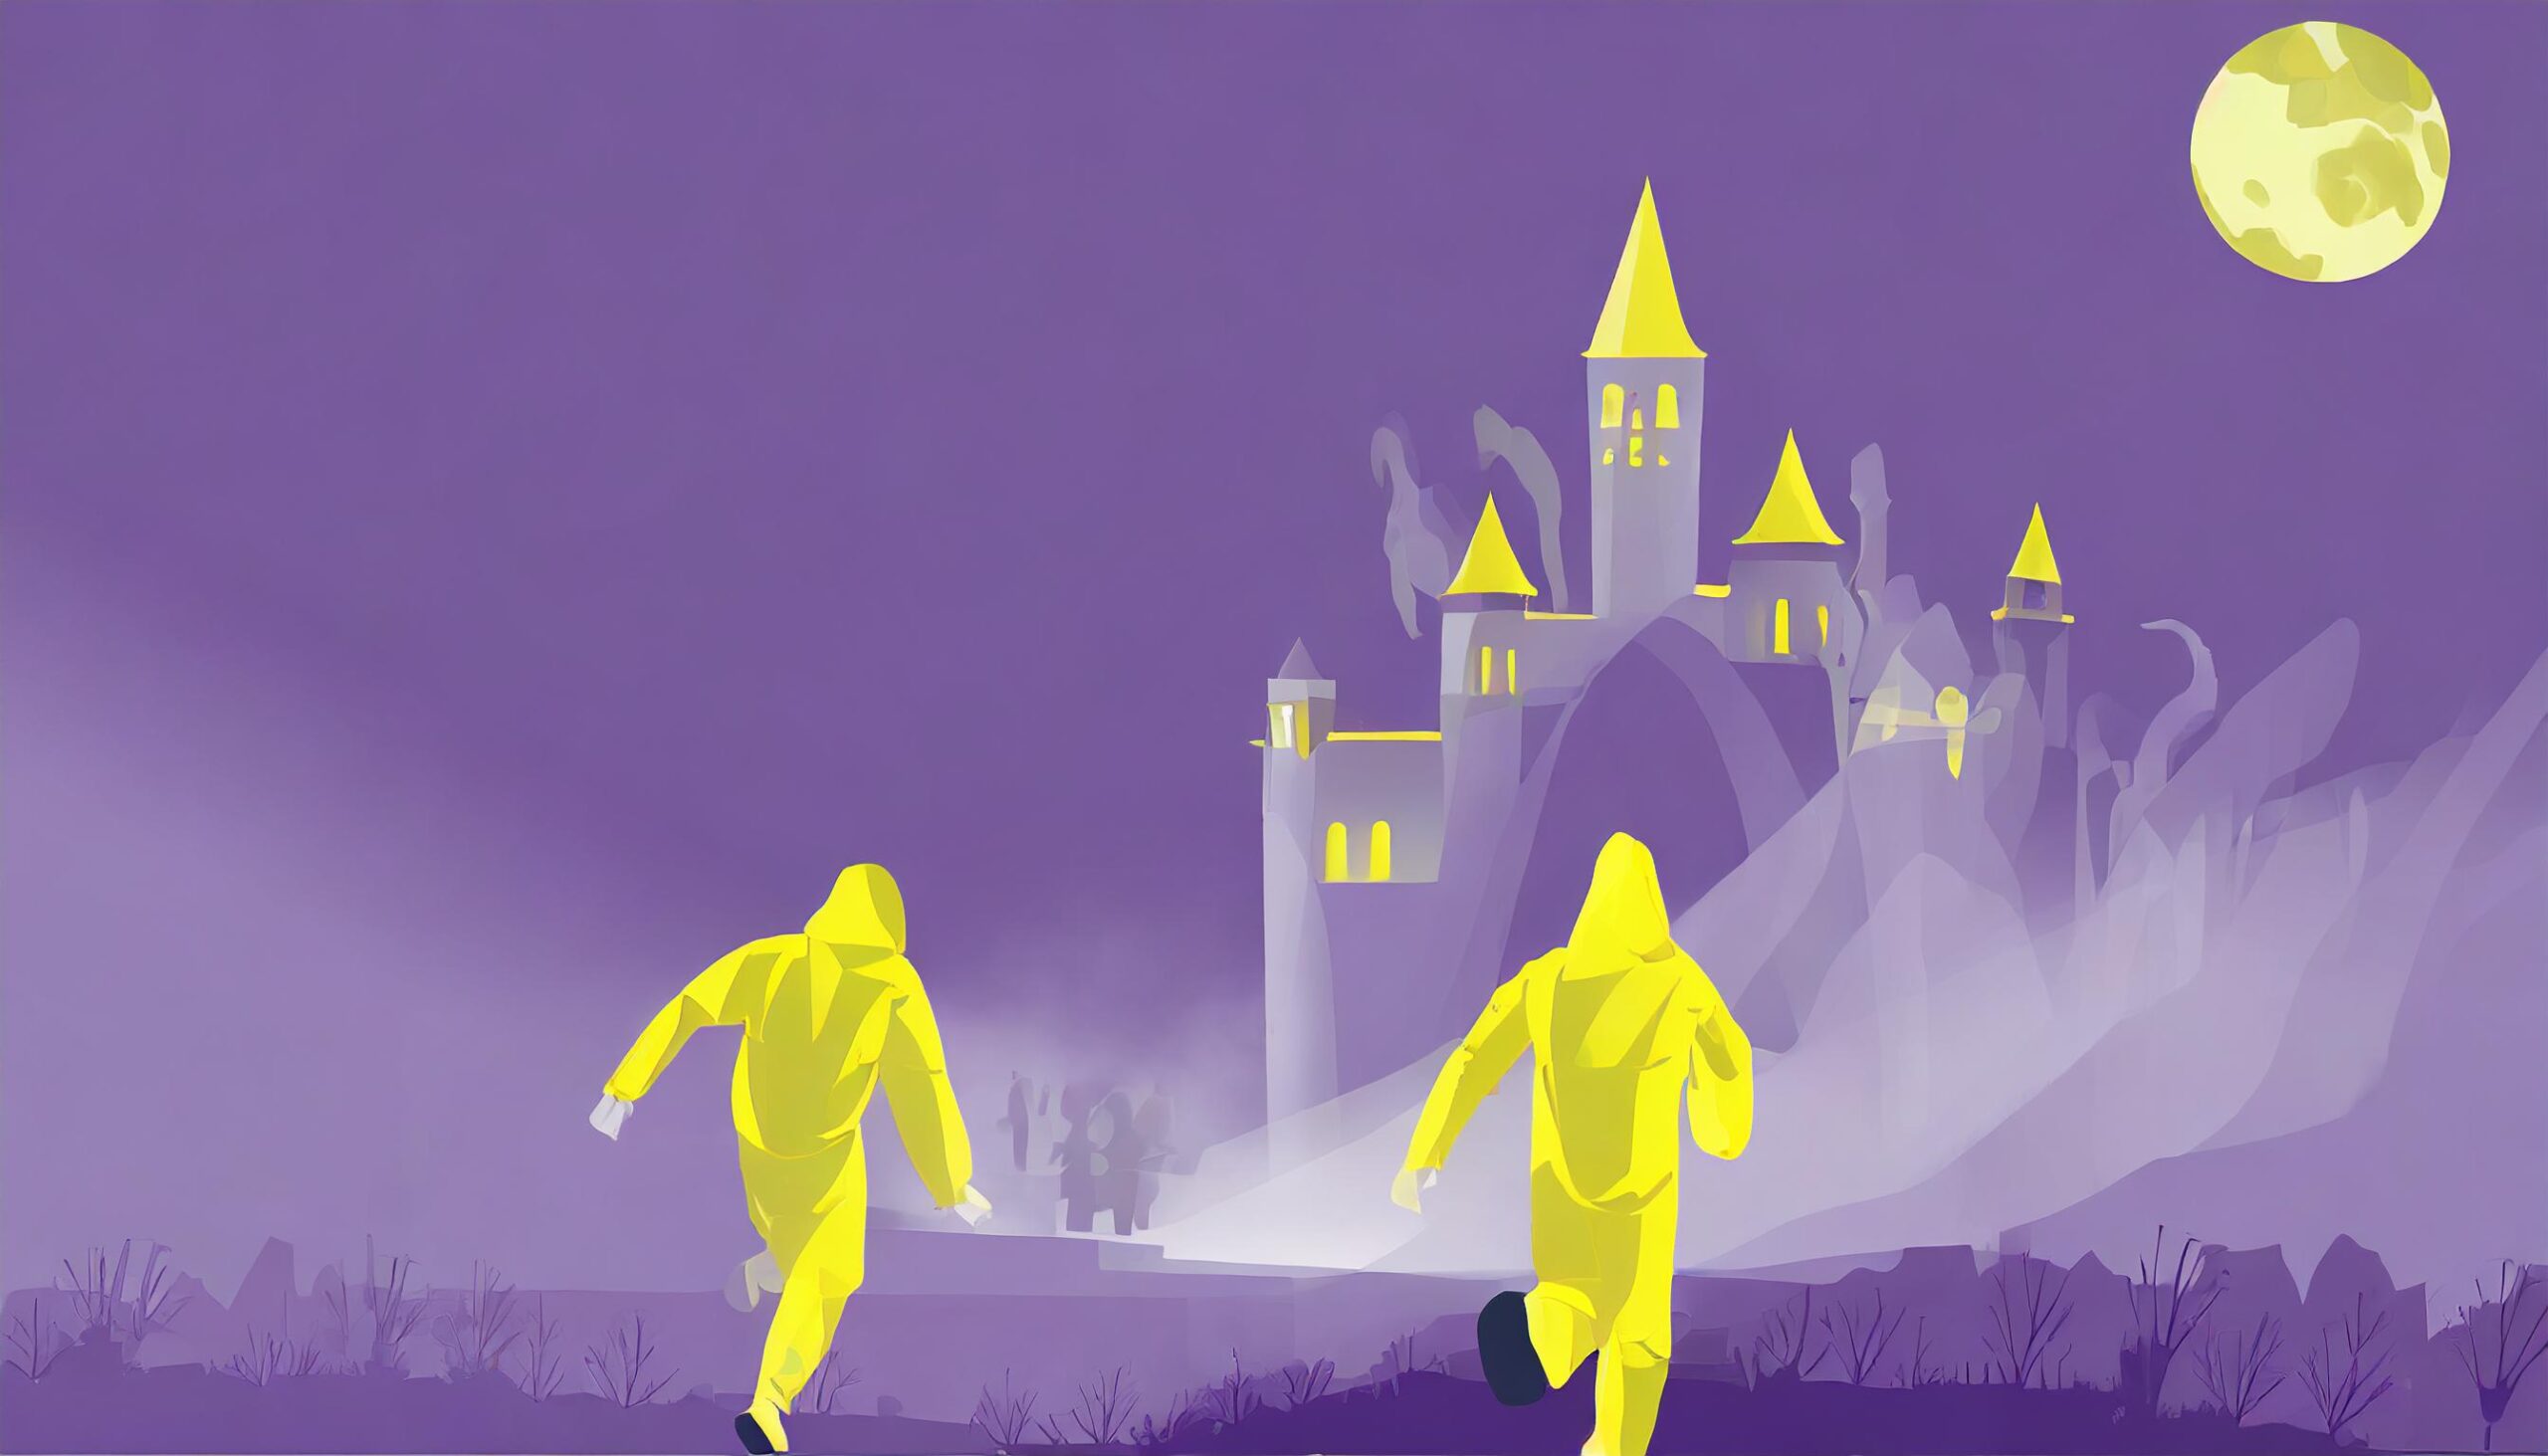 Grafische Darstellung: Zwei laufende Personen im gelben Overall von hinten, sie laufen auf eine Burg im Nebel zu. Vor dem lila Hintergrund ist oben rechts neben der Burg der gelbe Vollmond zu sehen.